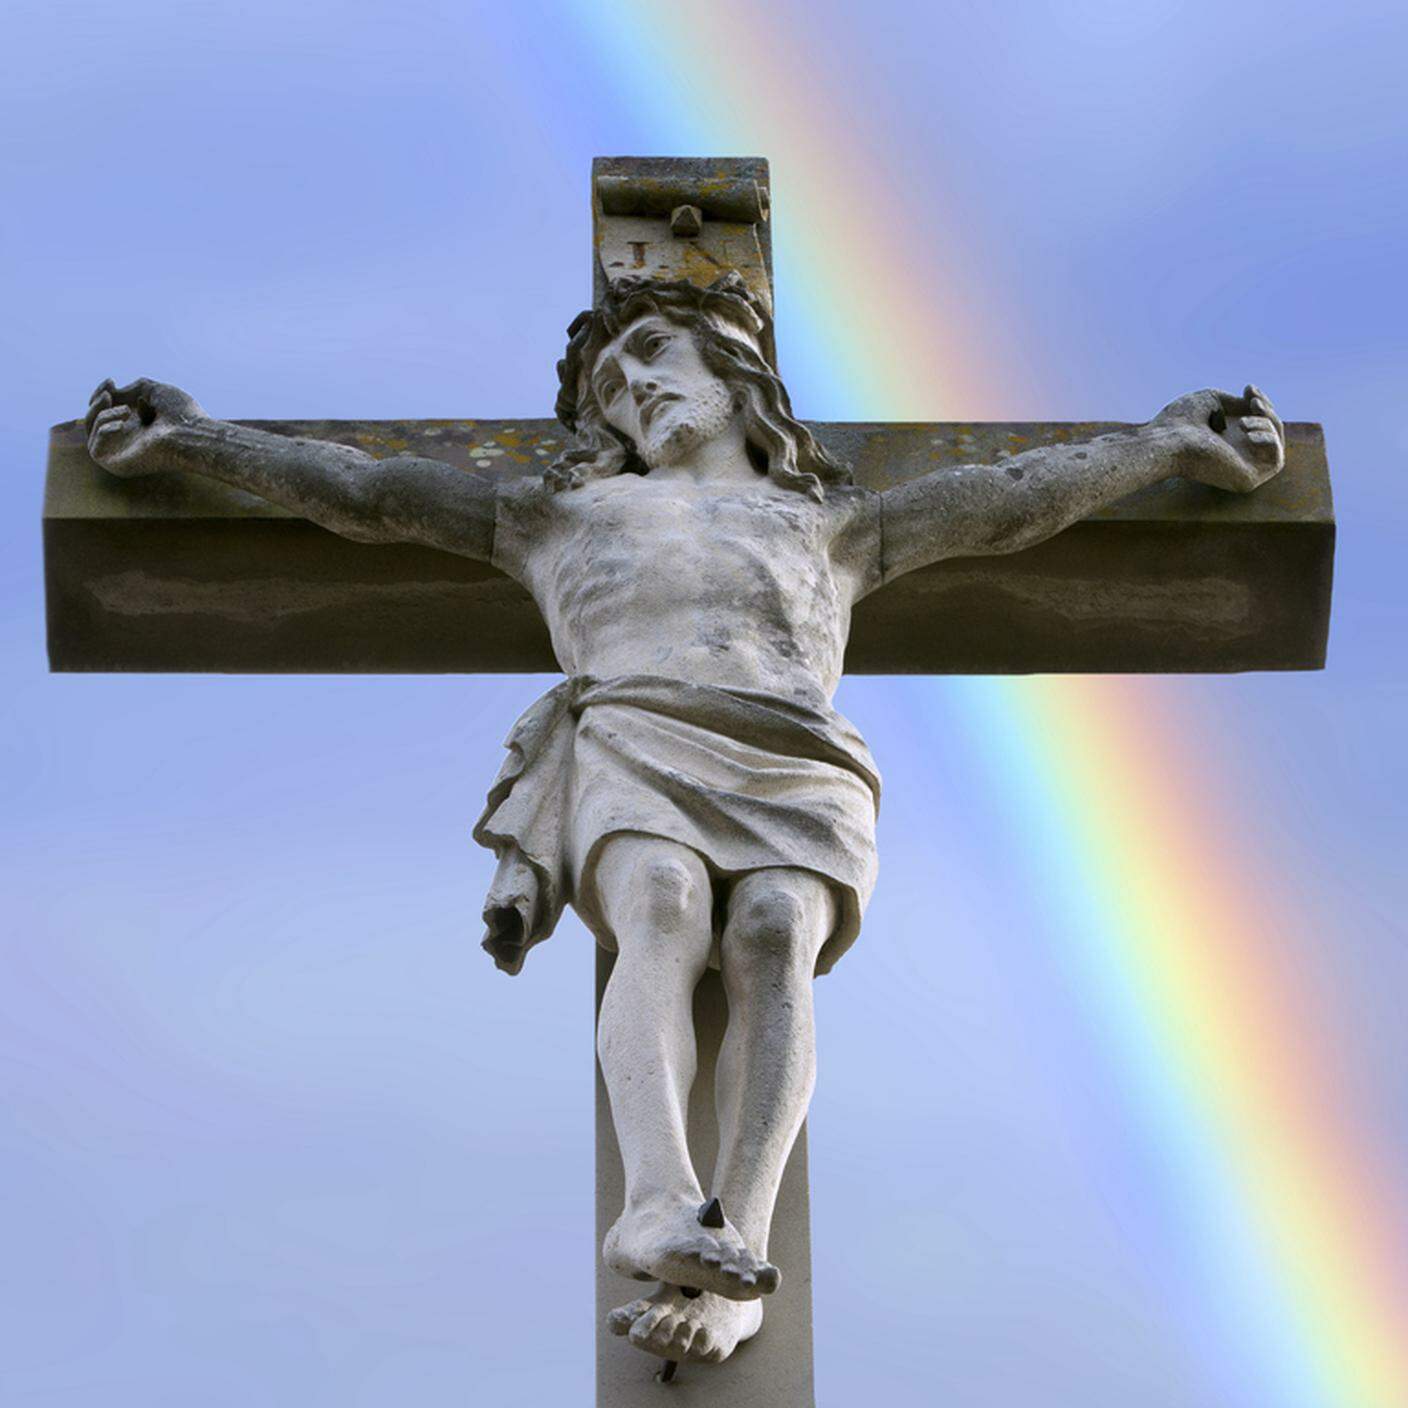 Chiesa, omossesualità, politica, croce cristo, arcobaleno